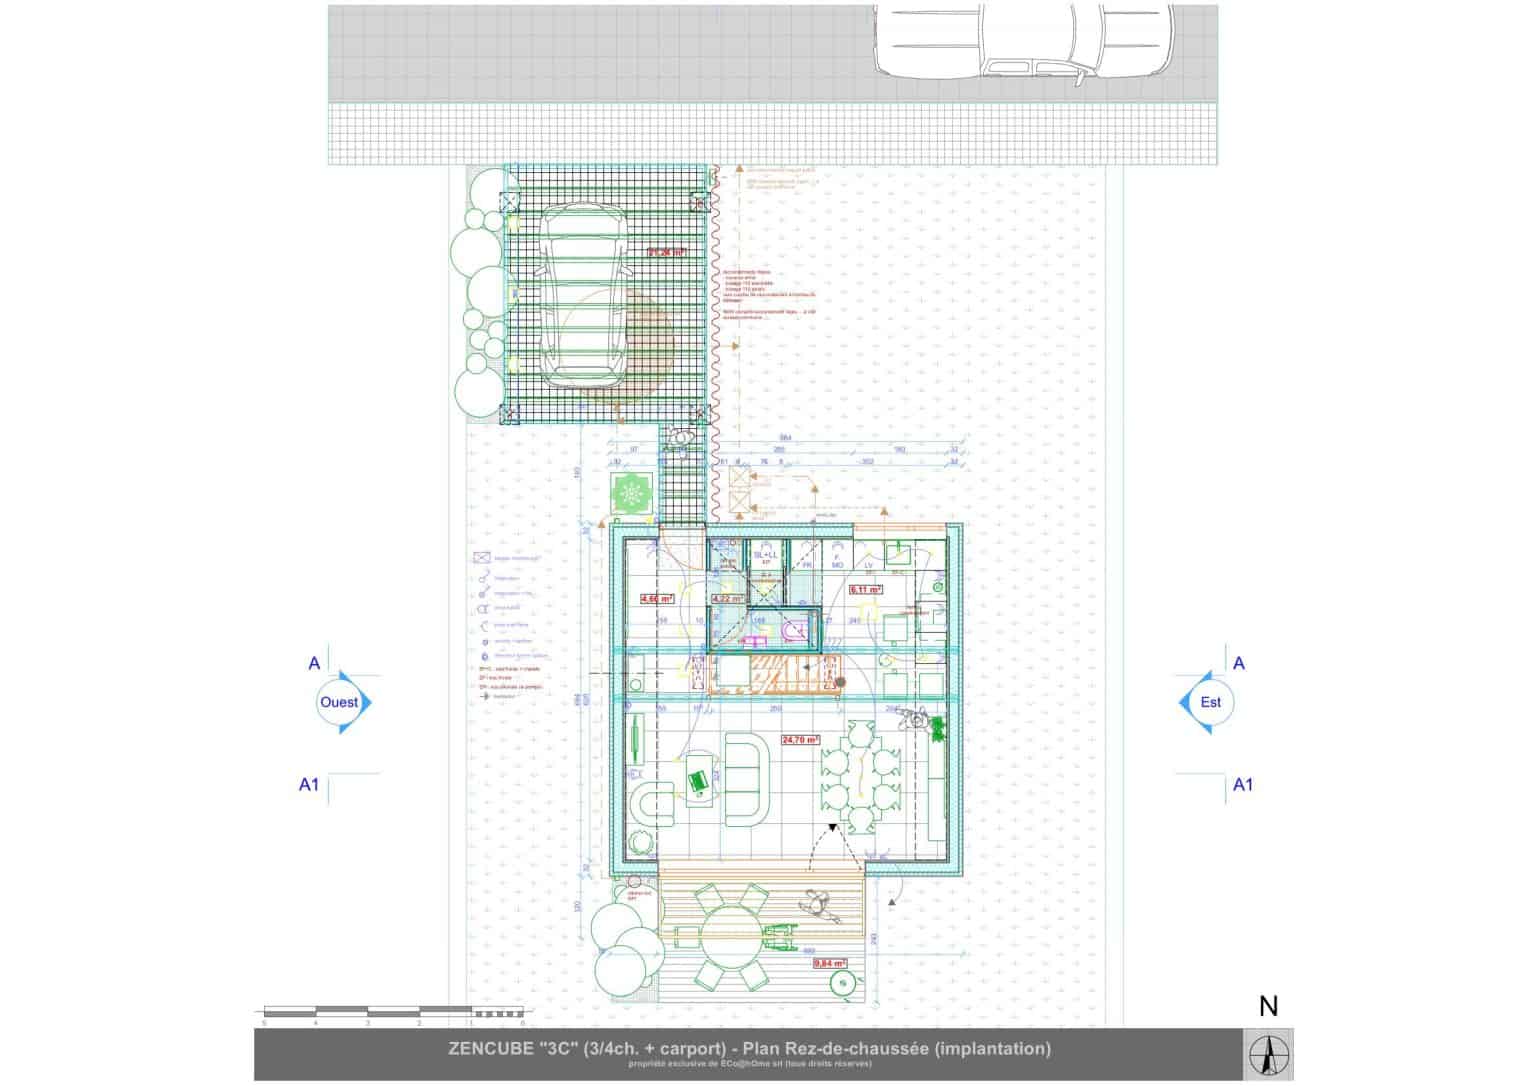 Plan d’architecte d’une maison unifamiliale ZenCube contemporaine